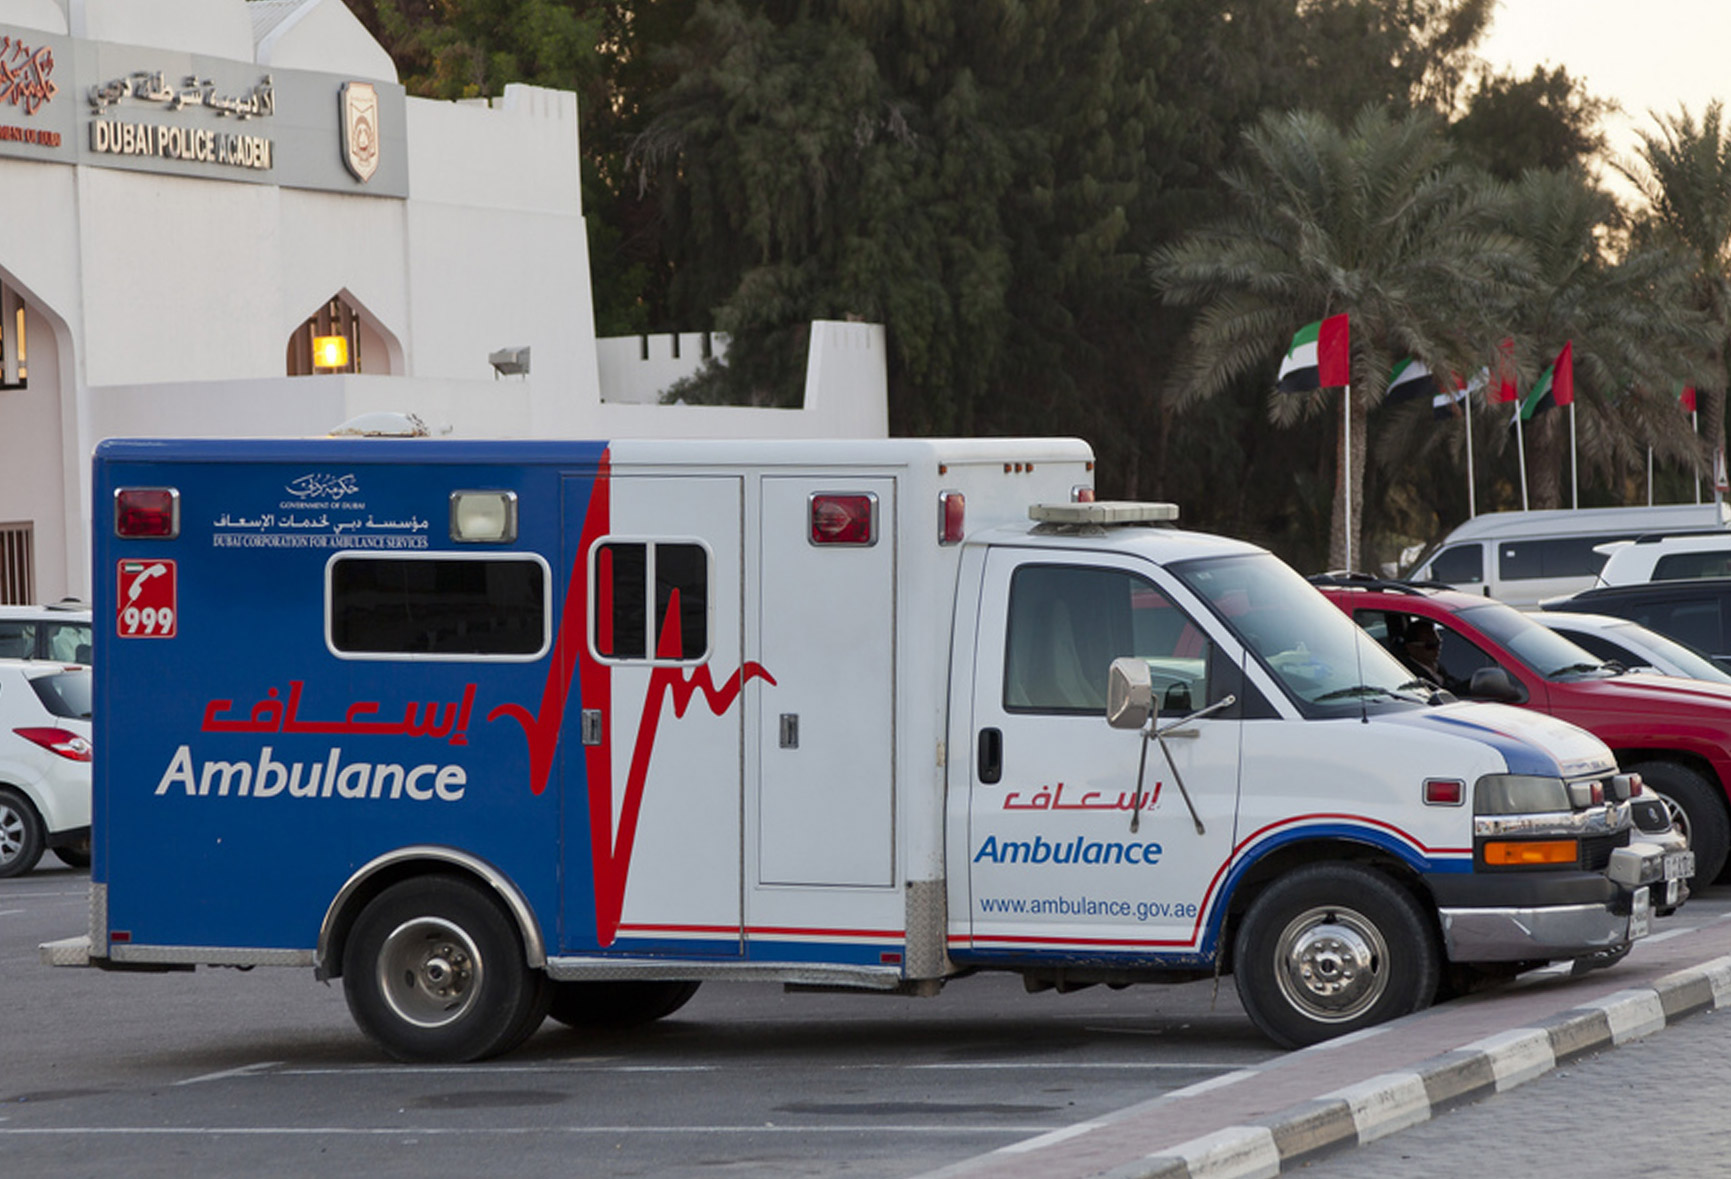 Ambulance arrive. Dubai Ambulance. Система здравоохранения в ОАЭ. Машины Emergency скорой.